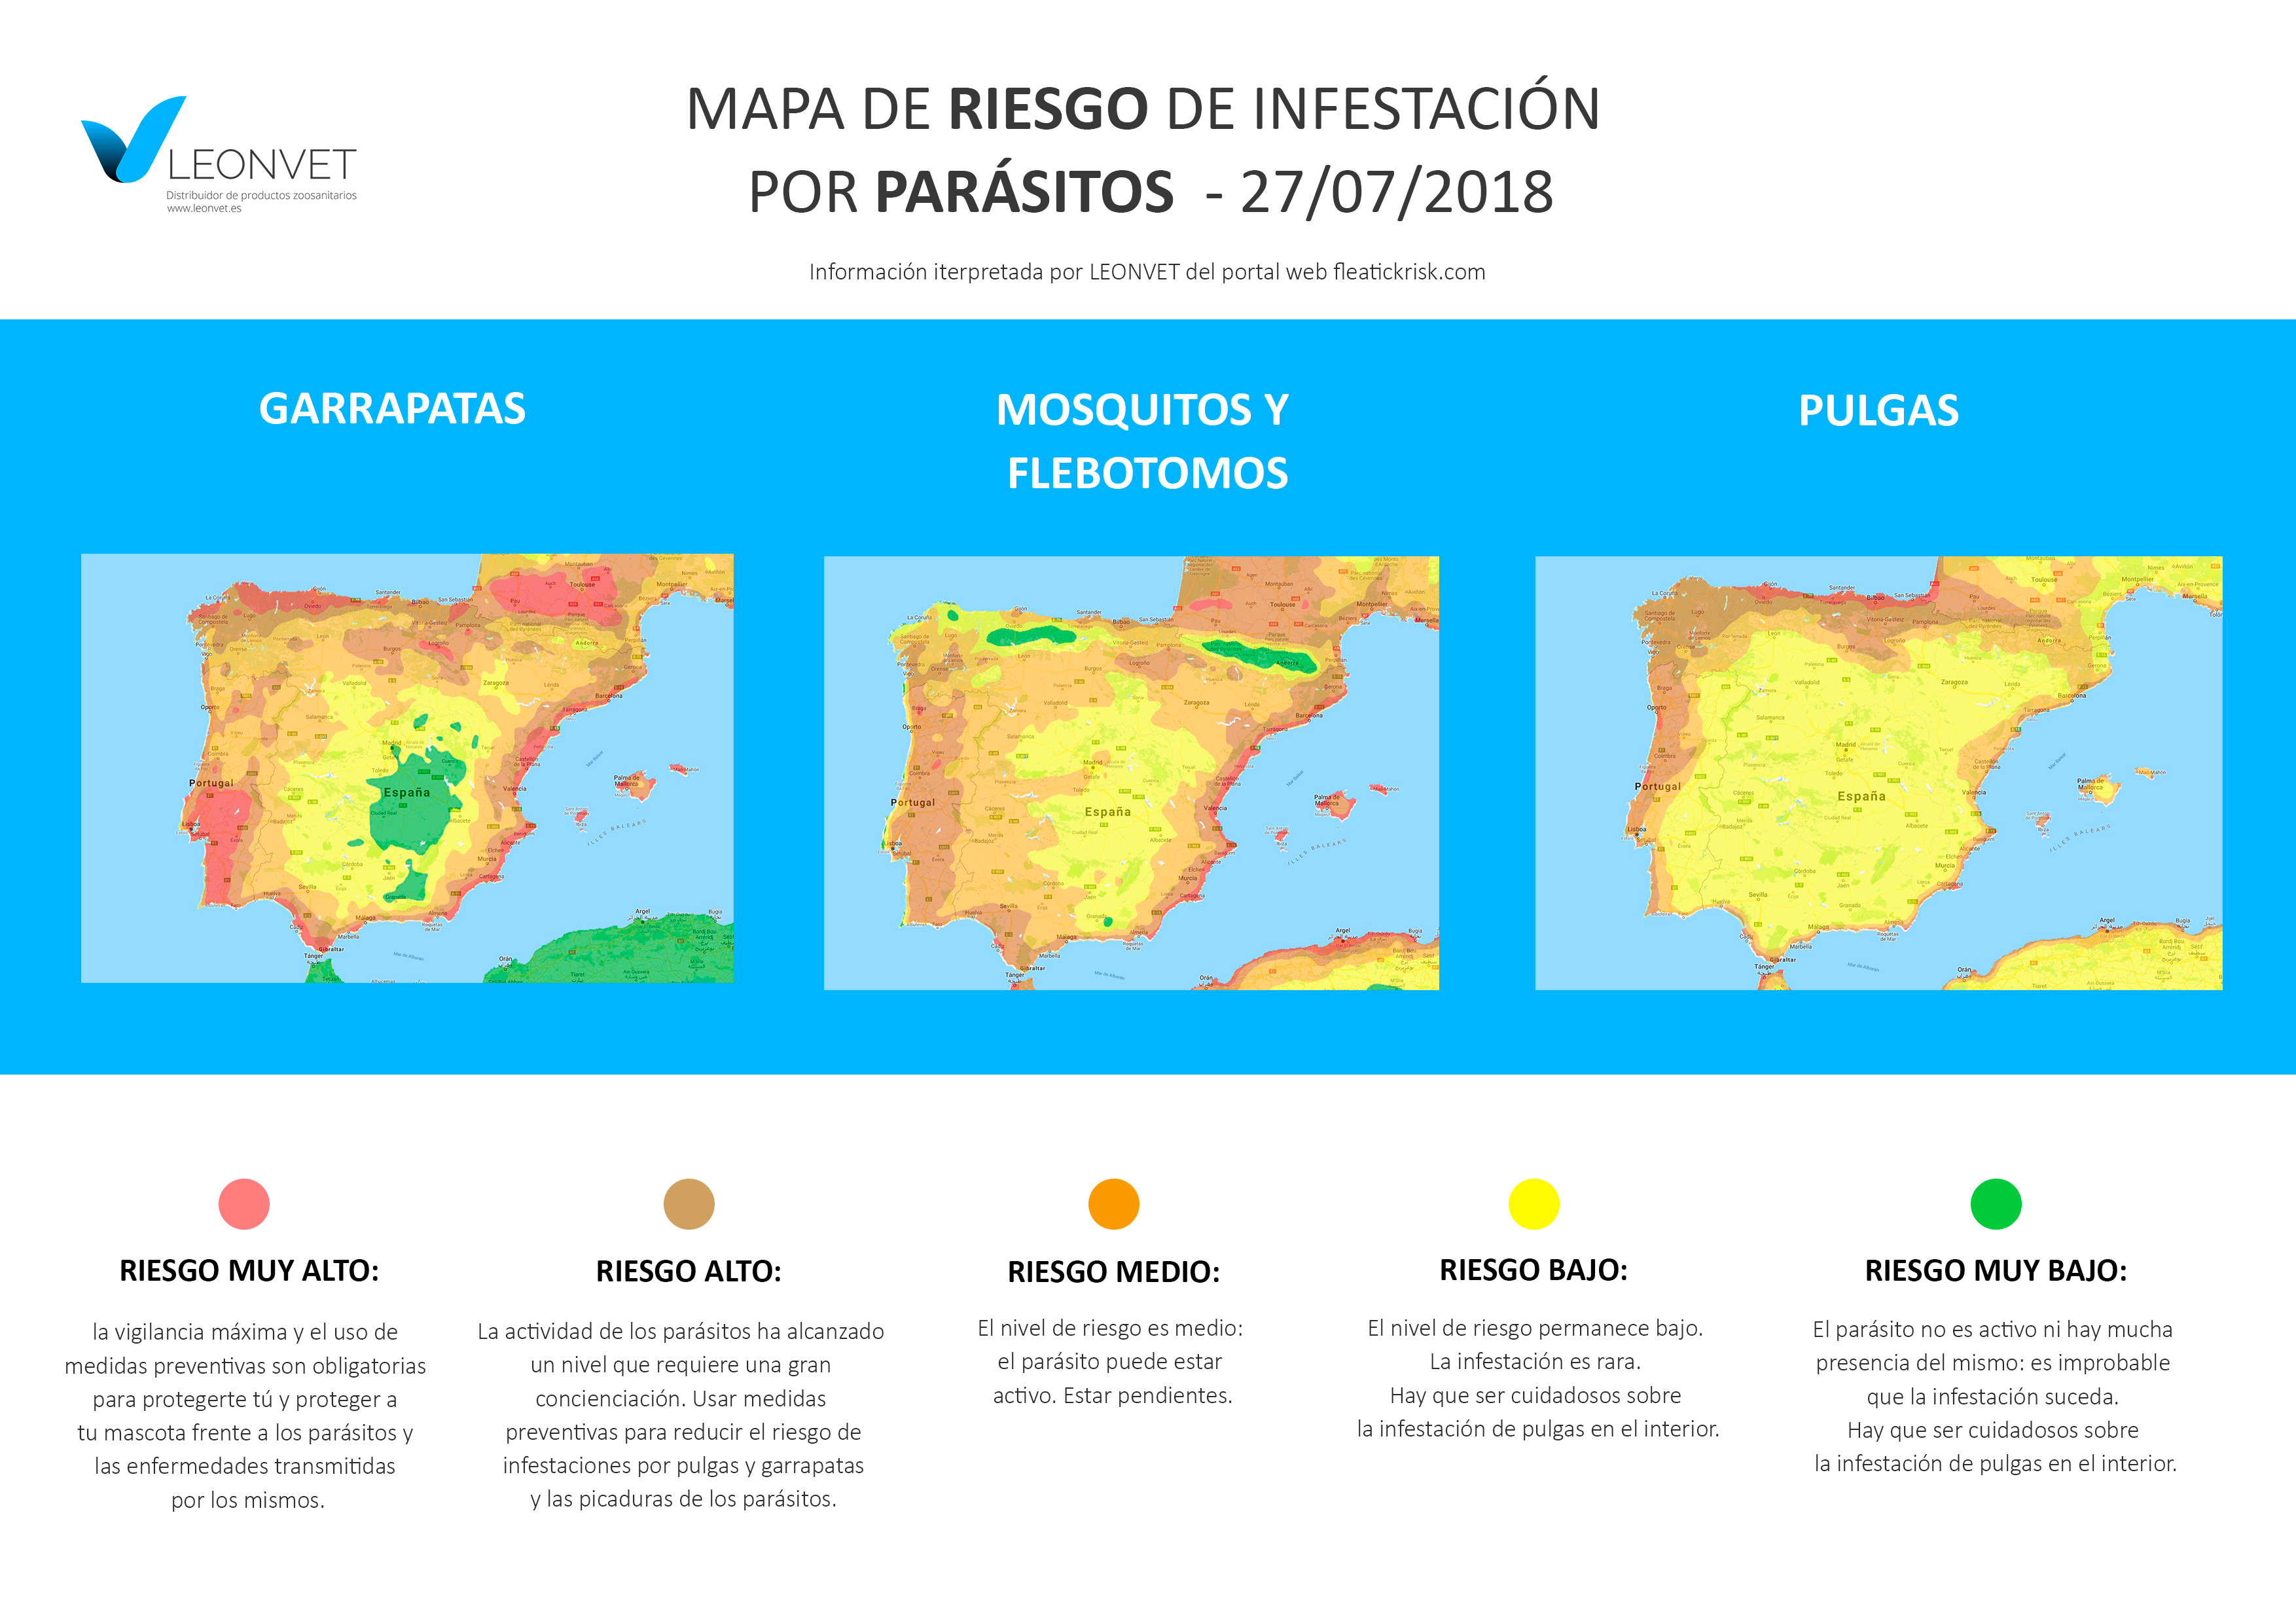 ¿Dónde están los parásitos en España?